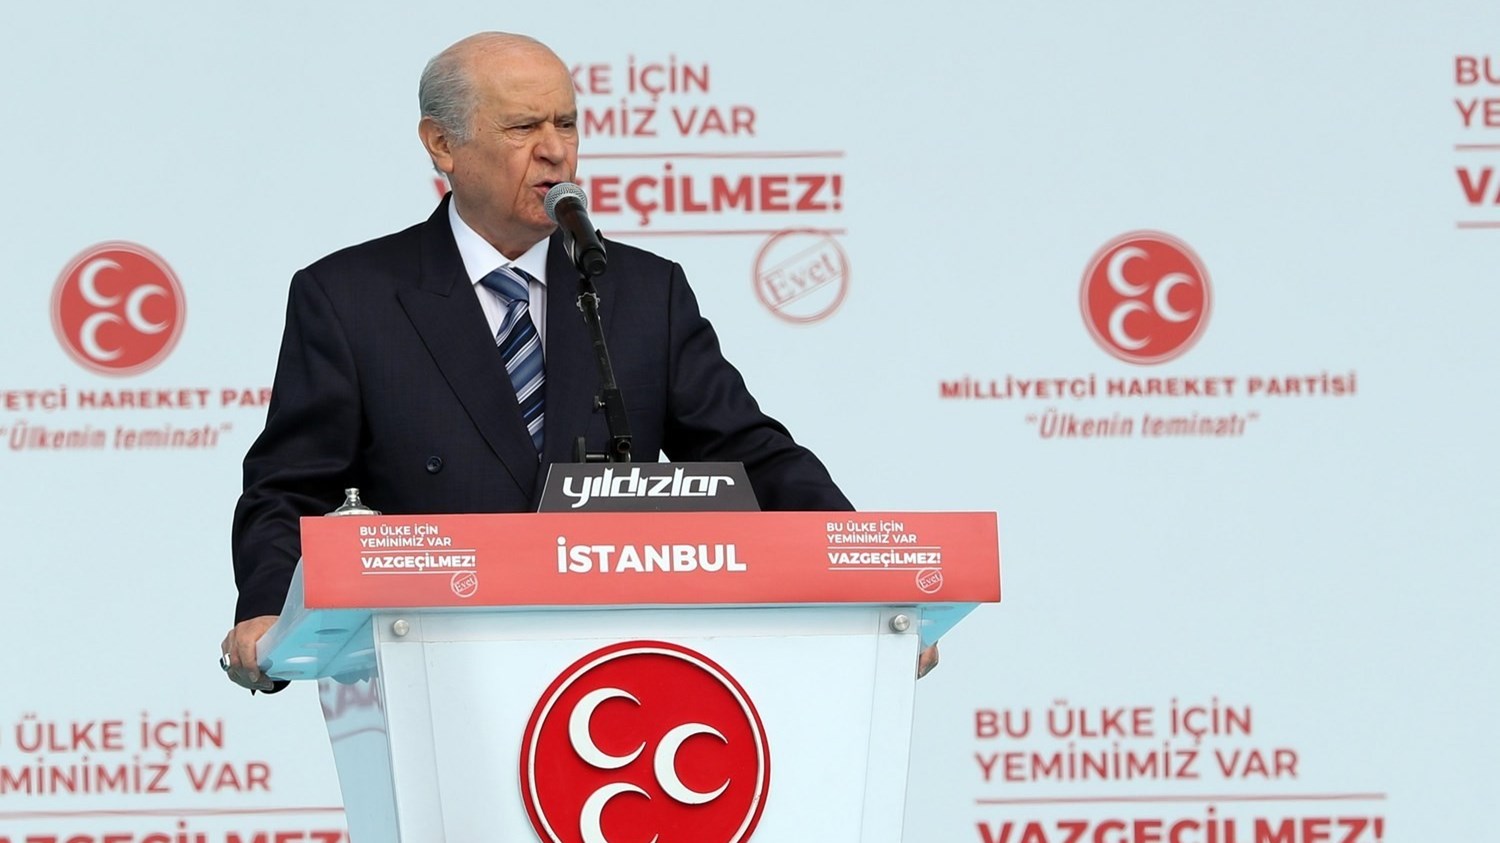 Μπαχτσελί: Η Τουρκία μπορεί να προσφύγει ξανά στις κάλπες, αν ο Ερντογάν δεν κερδίσει τις εκλογές